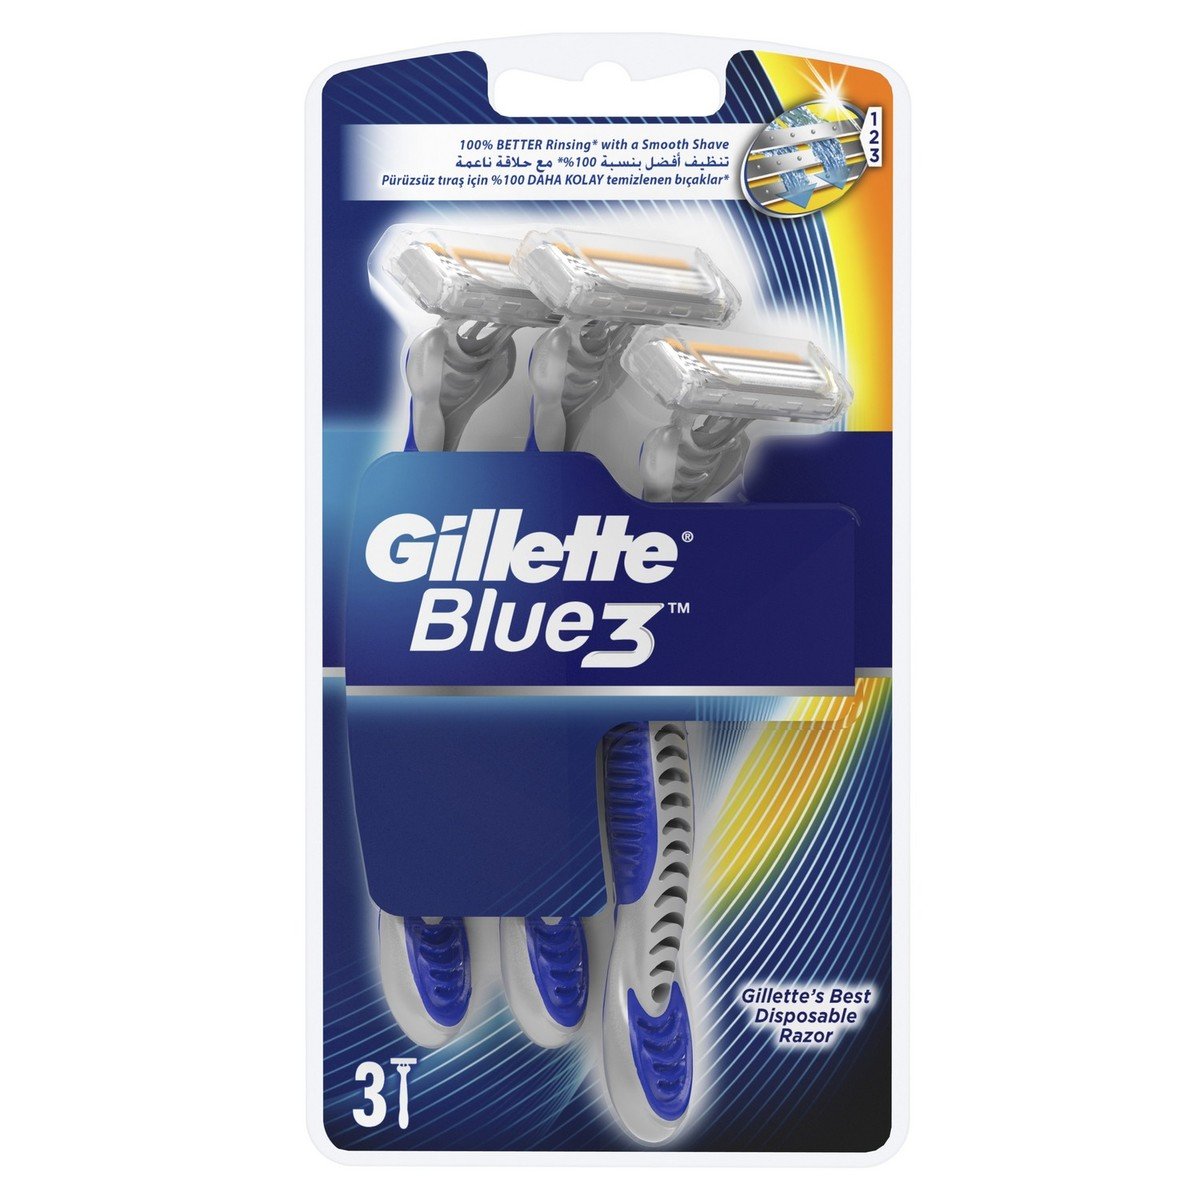 Gillette Blue3 Men’s Disposable Razors 3pcs